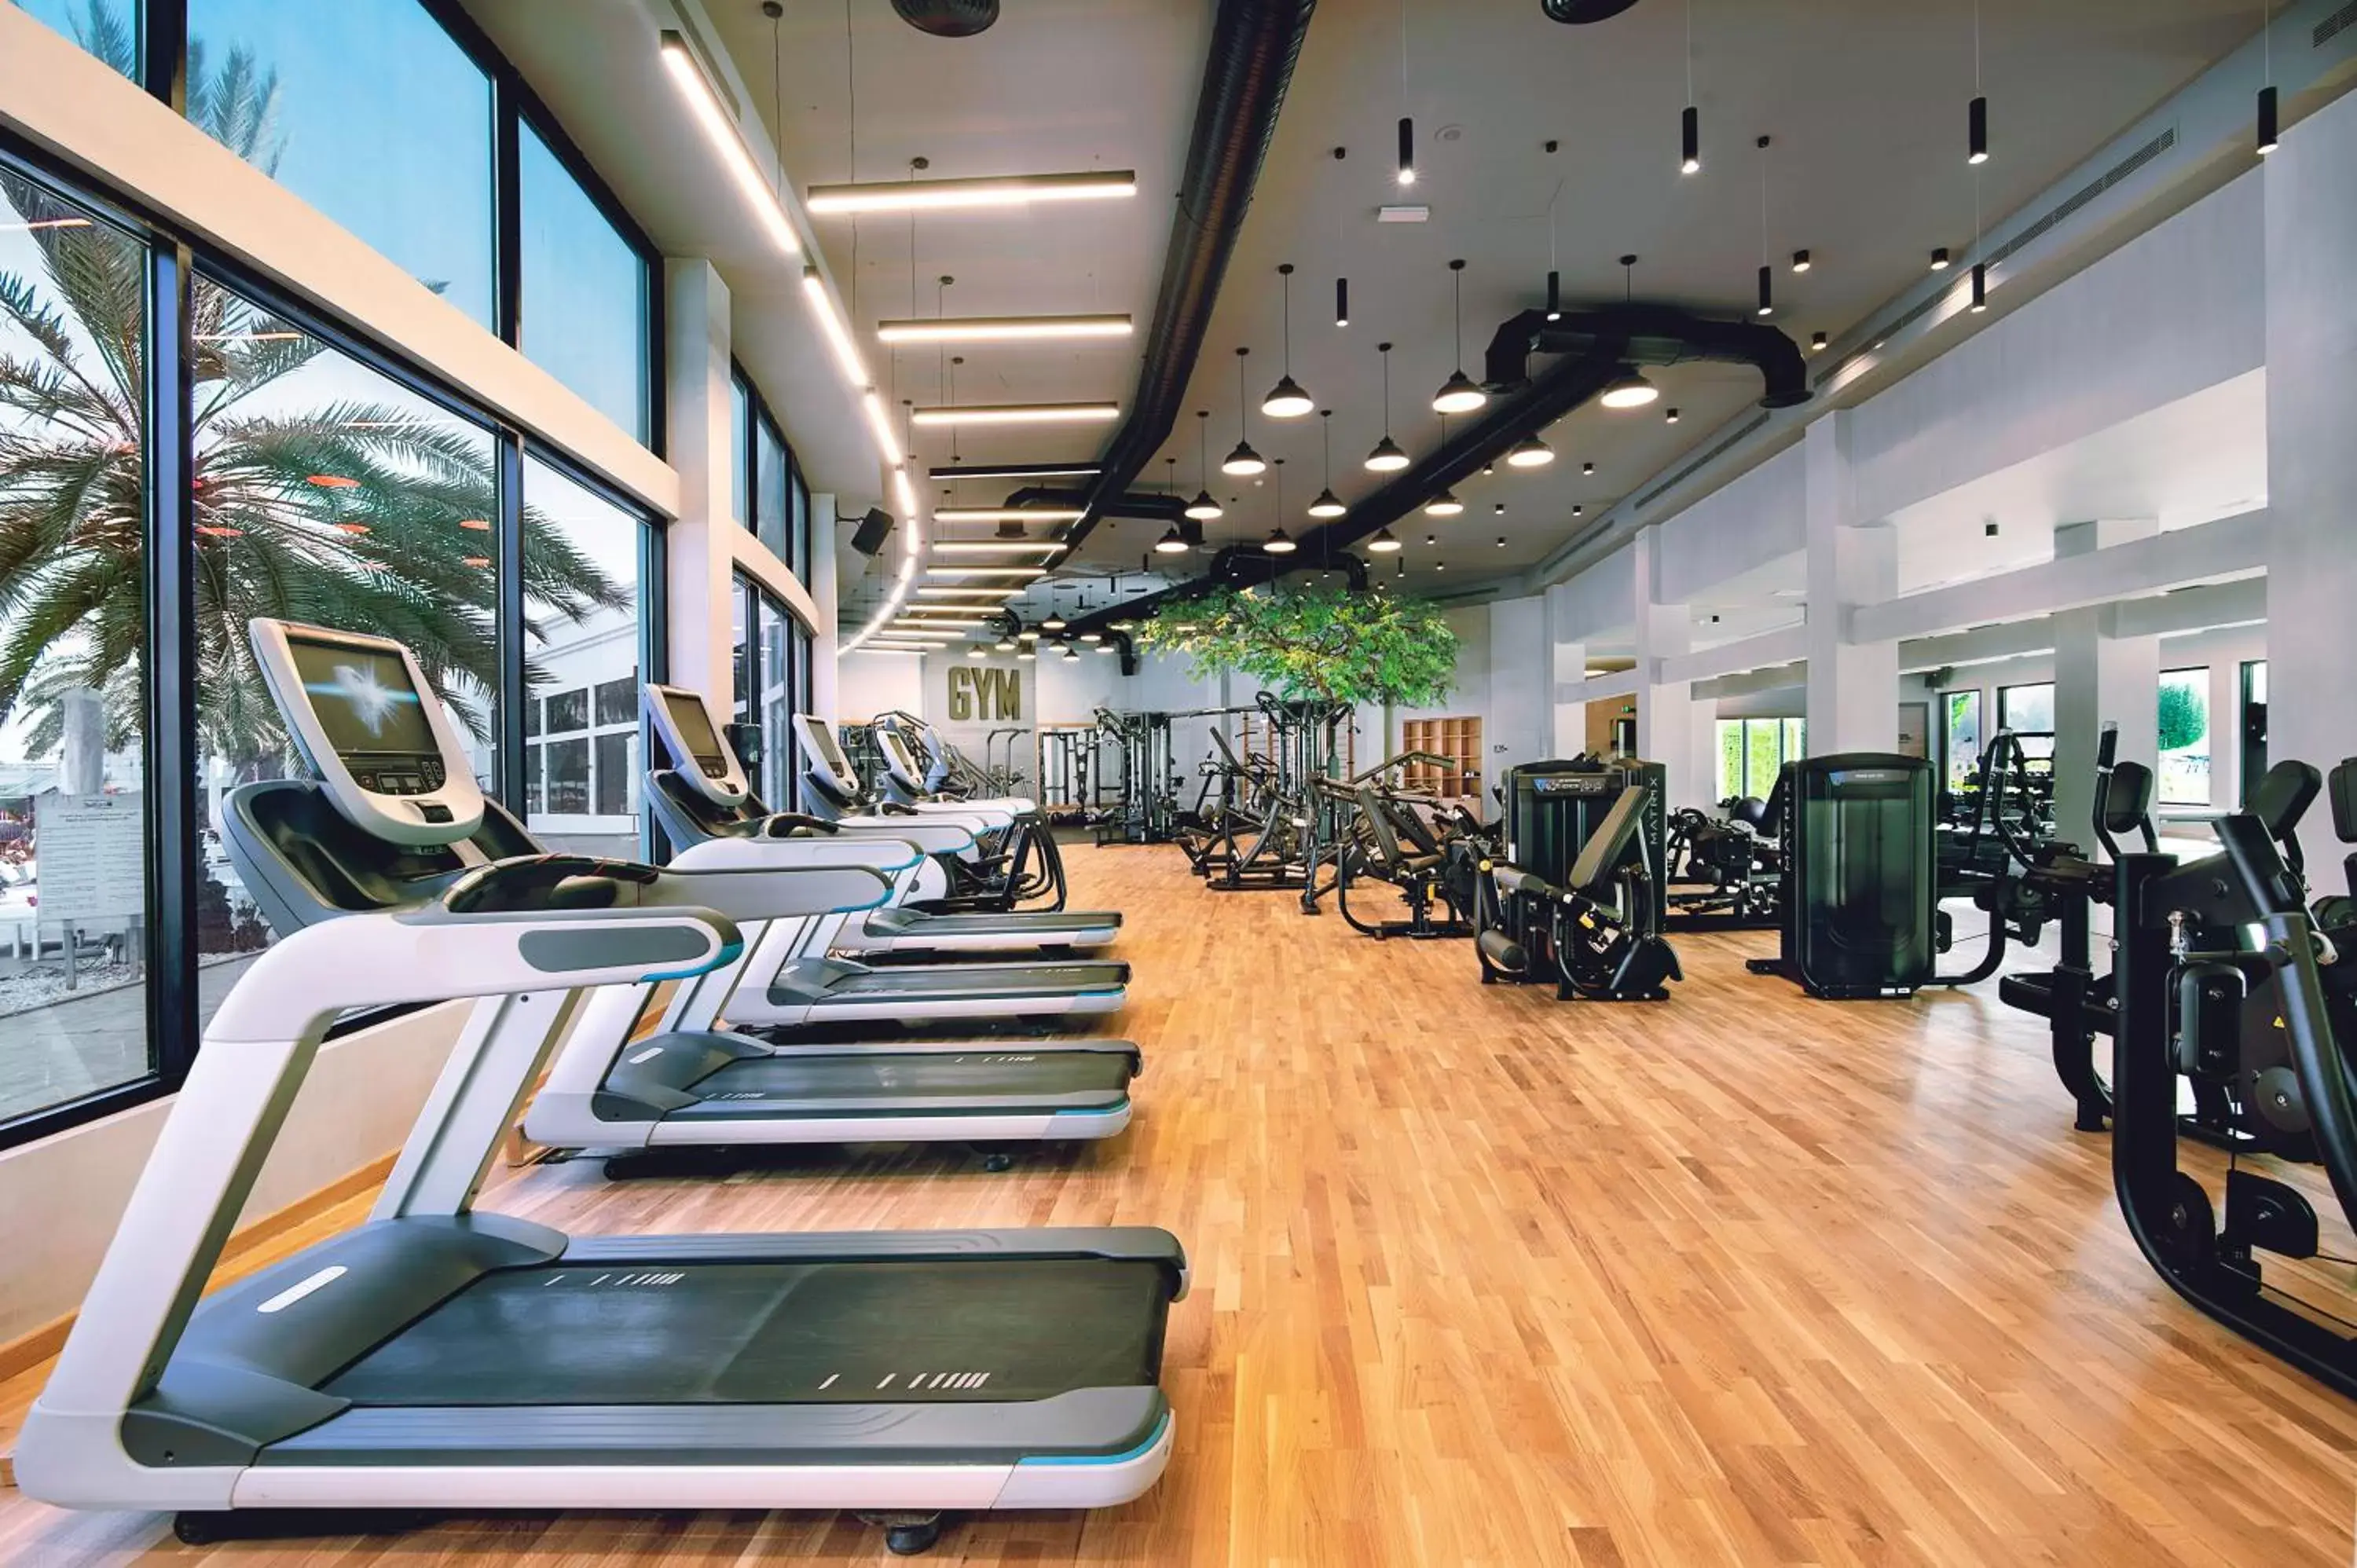 Fitness centre/facilities, Fitness Center/Facilities in Radisson Blu Hotel & Resort, Abu Dhabi Corniche